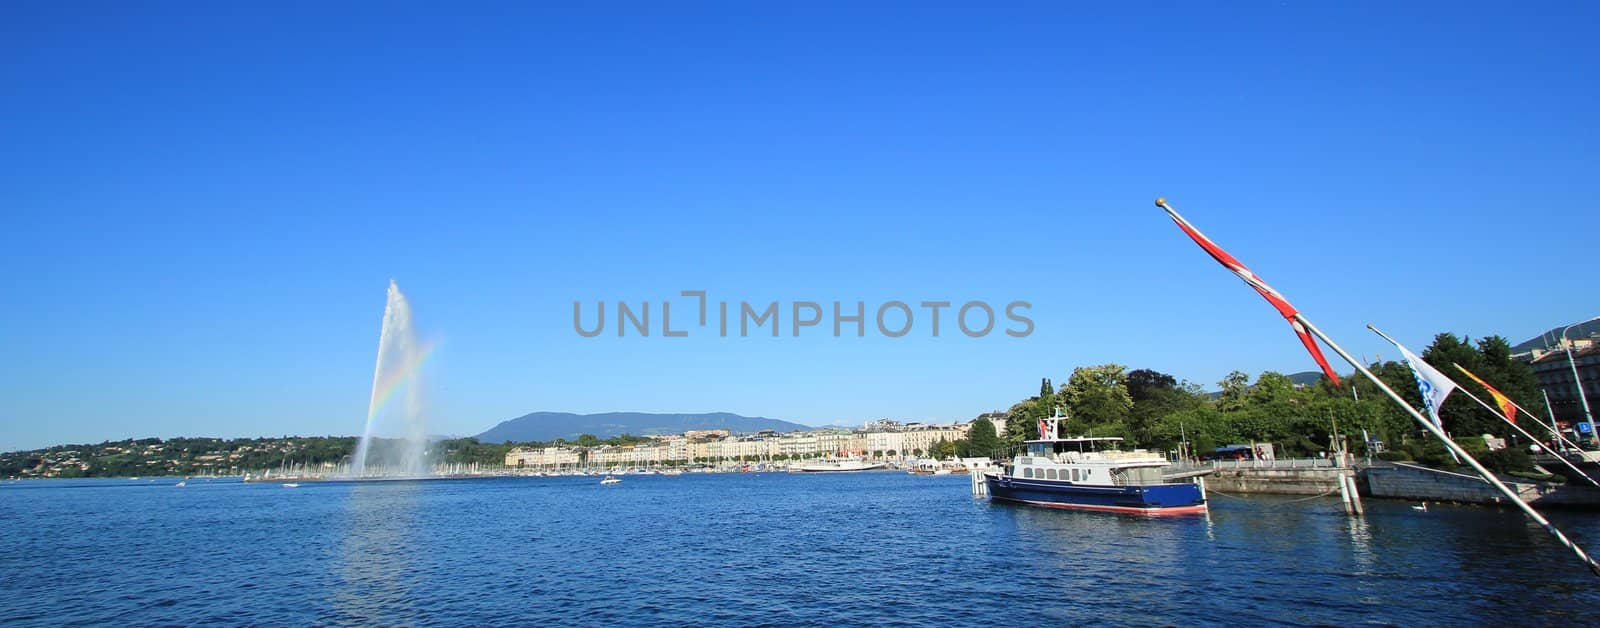 Panorama of Geneva, Switzerland by Elenaphotos21